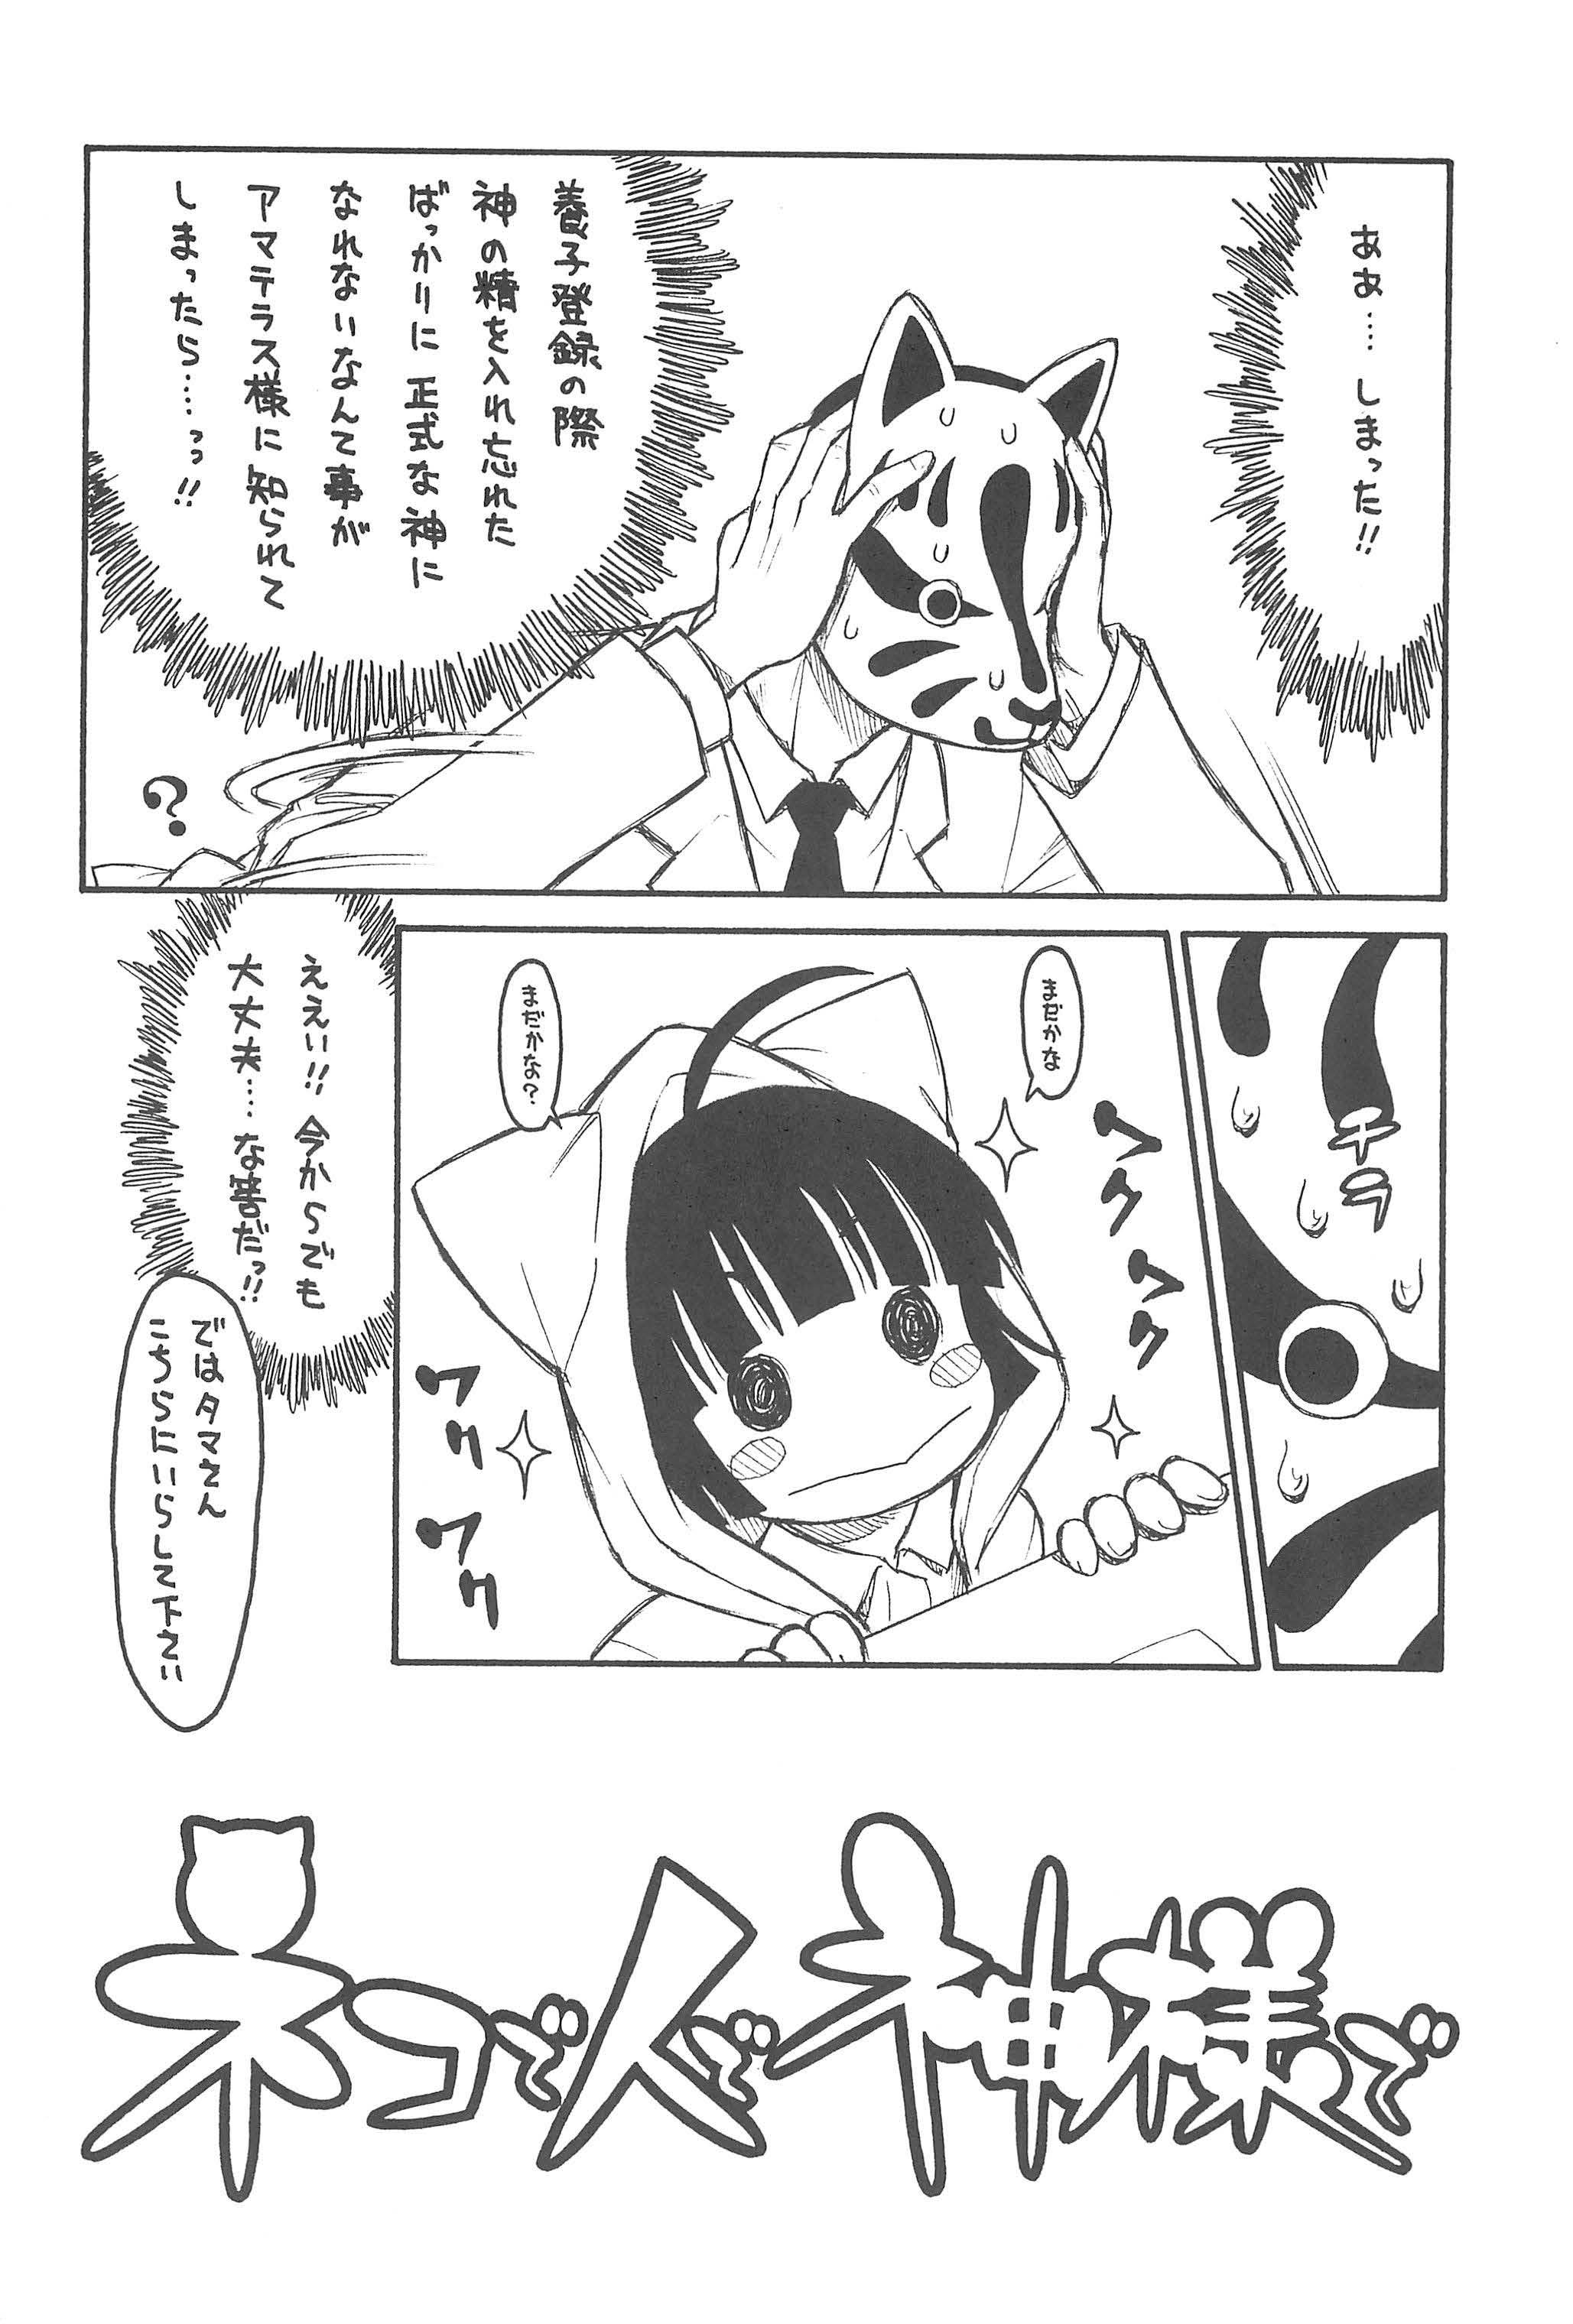 Moan Hinnyuu Musume 23 - Neko wappa Bwc - Page 6